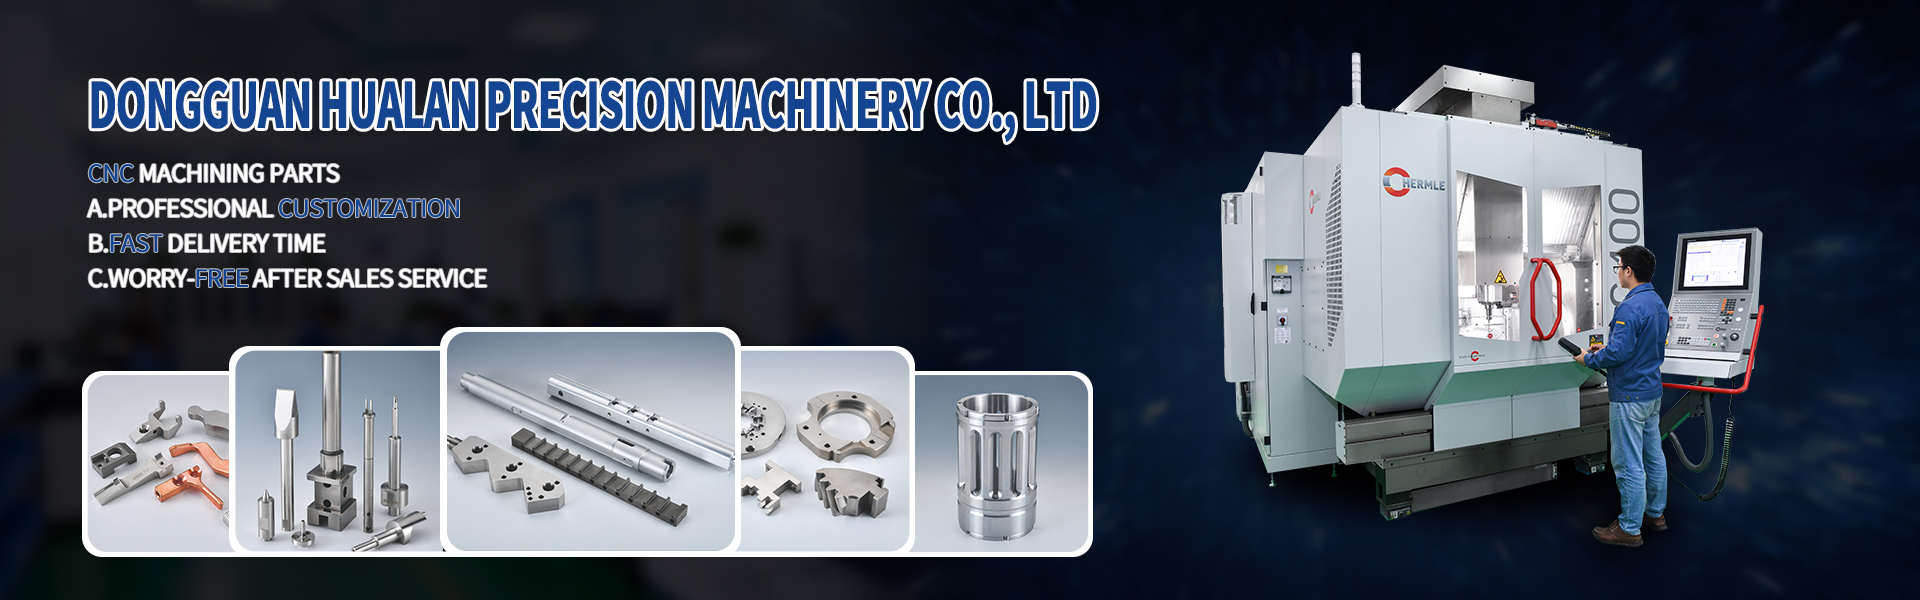 CNC機械加工部品、チューリング、ミリング、ラインカット,Dongguan Hualan Precision Machinery Co., LTD